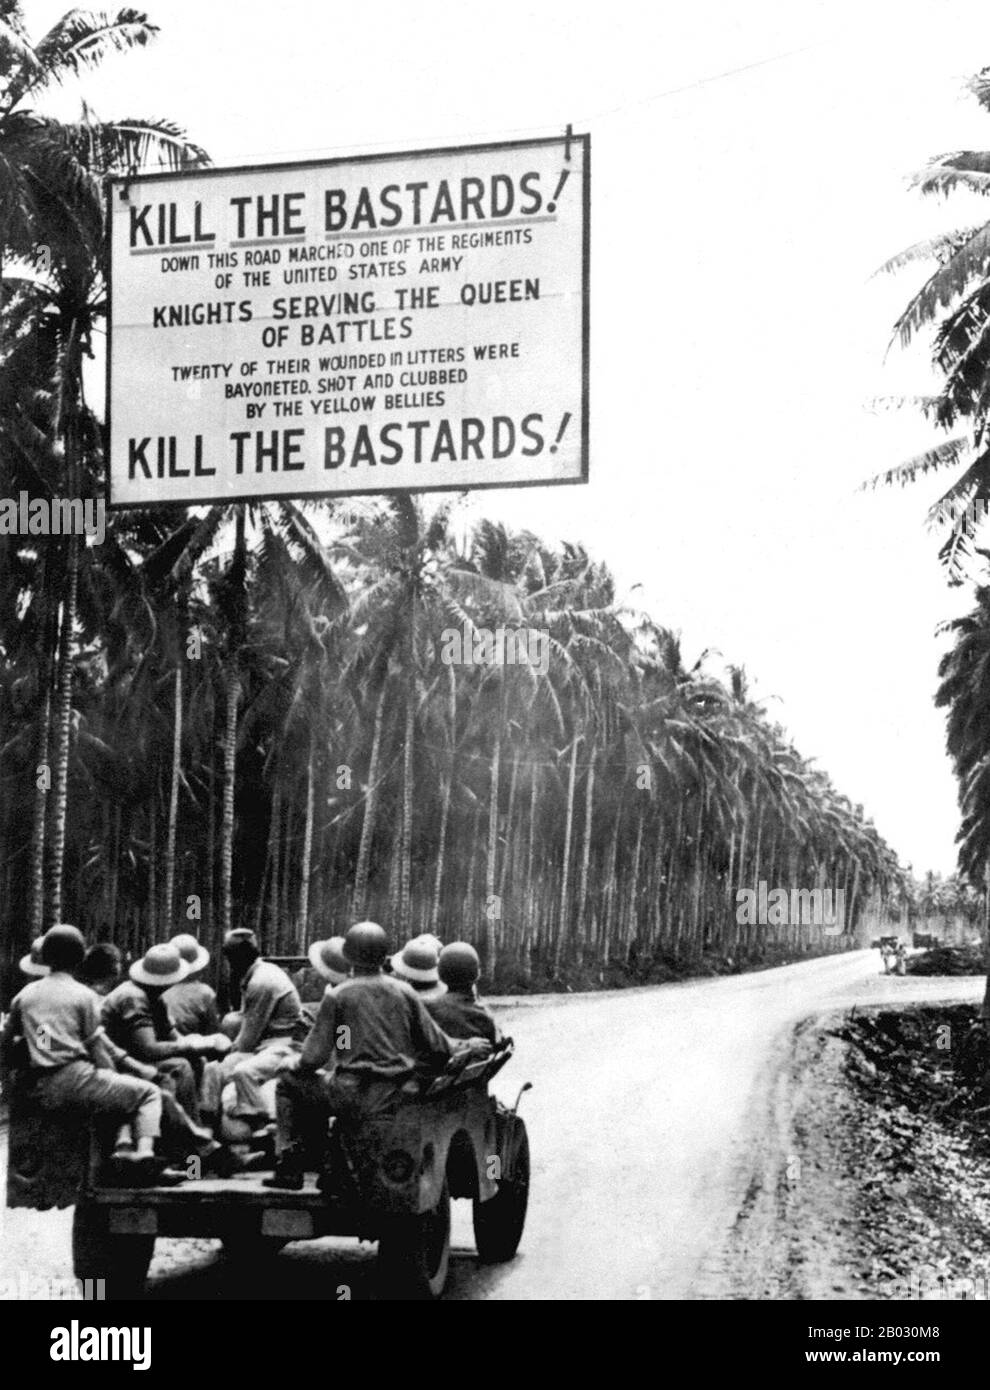 Die Guadalcanal Campaign, auch als Schlacht um Guadalcanal bezeichnet, war eine militärische Kampagne, die zwischen dem 7. August 1942 und dem 9. Februar 1943 auf und um die Insel Guadalcanal im Pazifiktheater des zweiten Weltkriegs ausgetragen wurde Es war die erste Großoffensive der alliierten Streitkräfte gegen das Reich von Japan. Nach sechs Monaten harter Kämpfe gelang es den alliierten Truppen, den japanischen Vormarsch zu stoppen und am 15. Januar 1943 die letzte der japanischen Truppen ins Meer zu treiben. Die amerikanischen Behörden erklärten Guadalcanal am 9. Februar 1943 für gesichert. Stockfoto